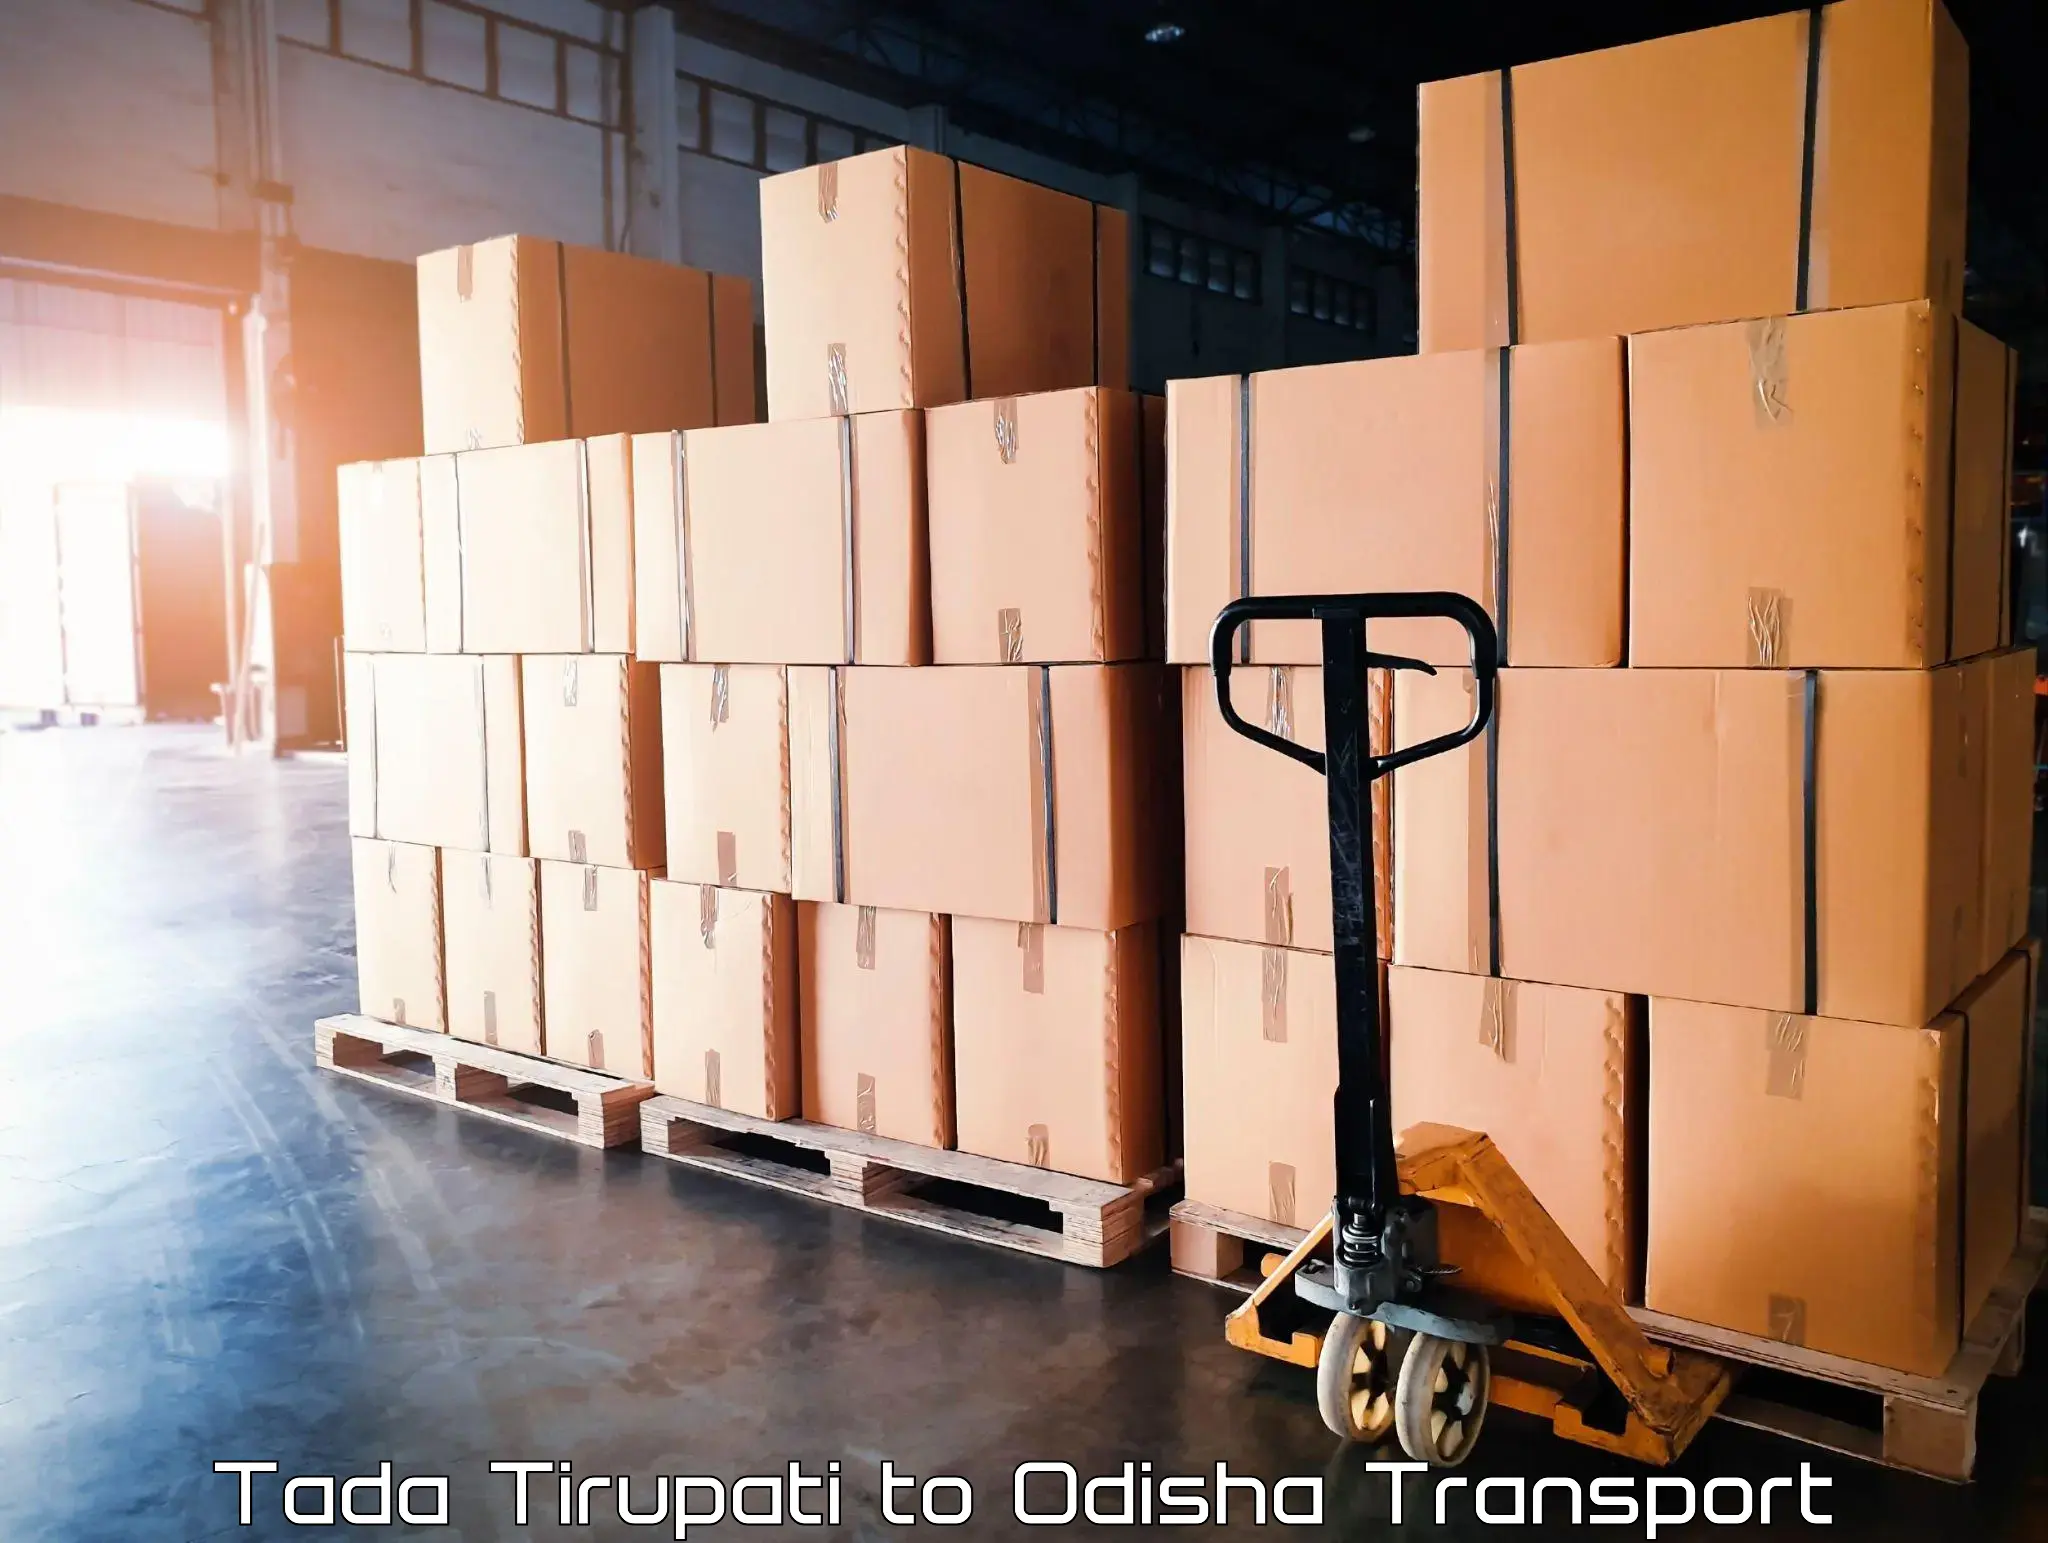 Bike transport service Tada Tirupati to Odisha